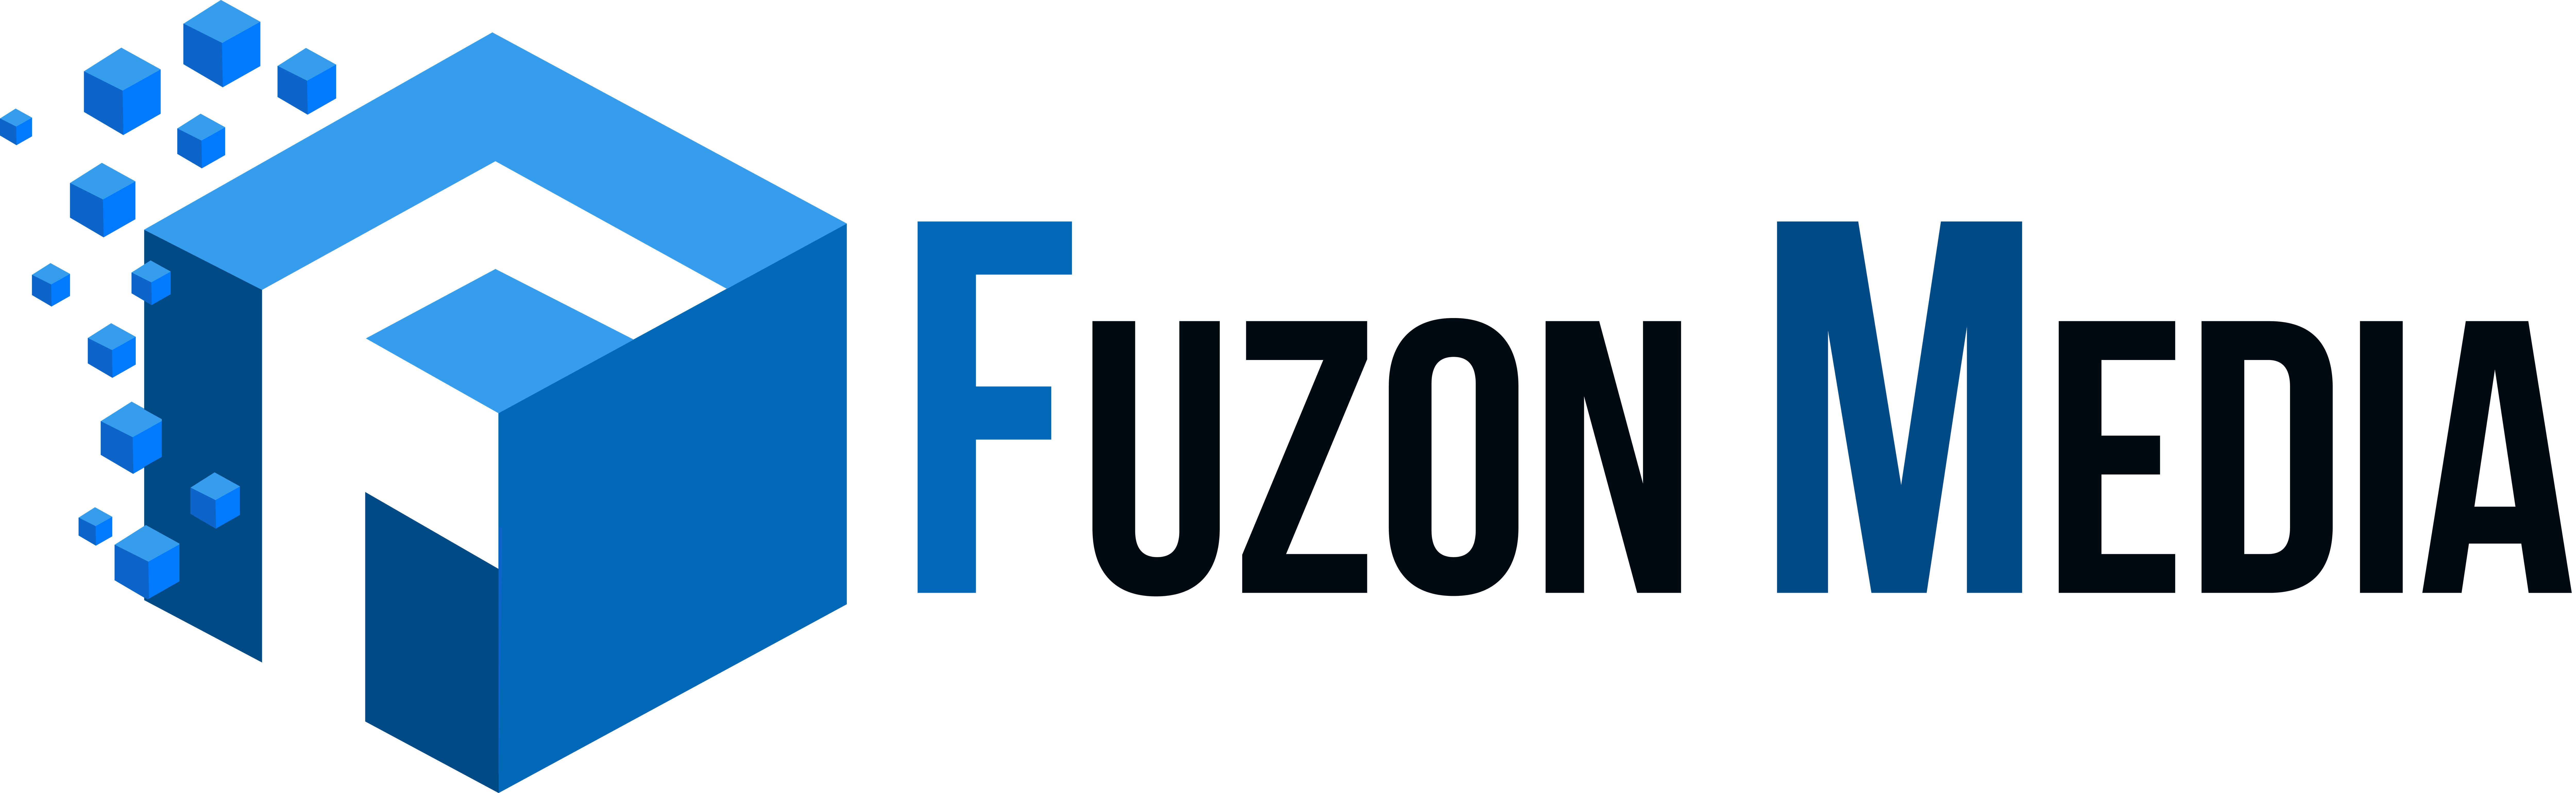 Fuzonmedia Logo